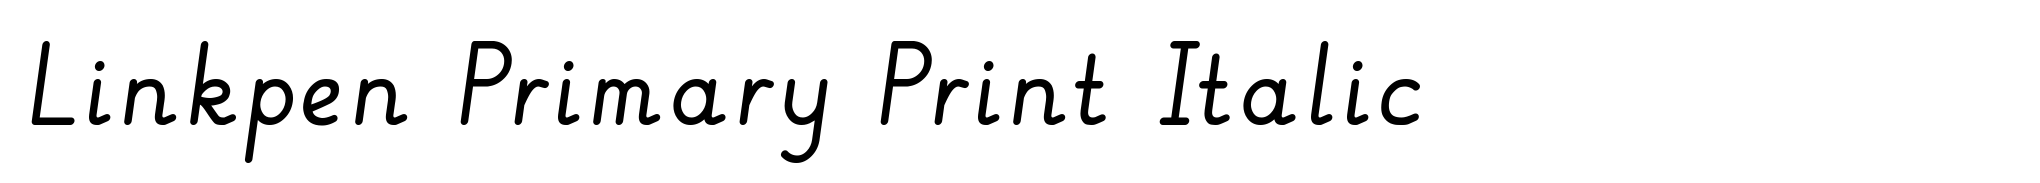 Linkpen Primary Print Italic image